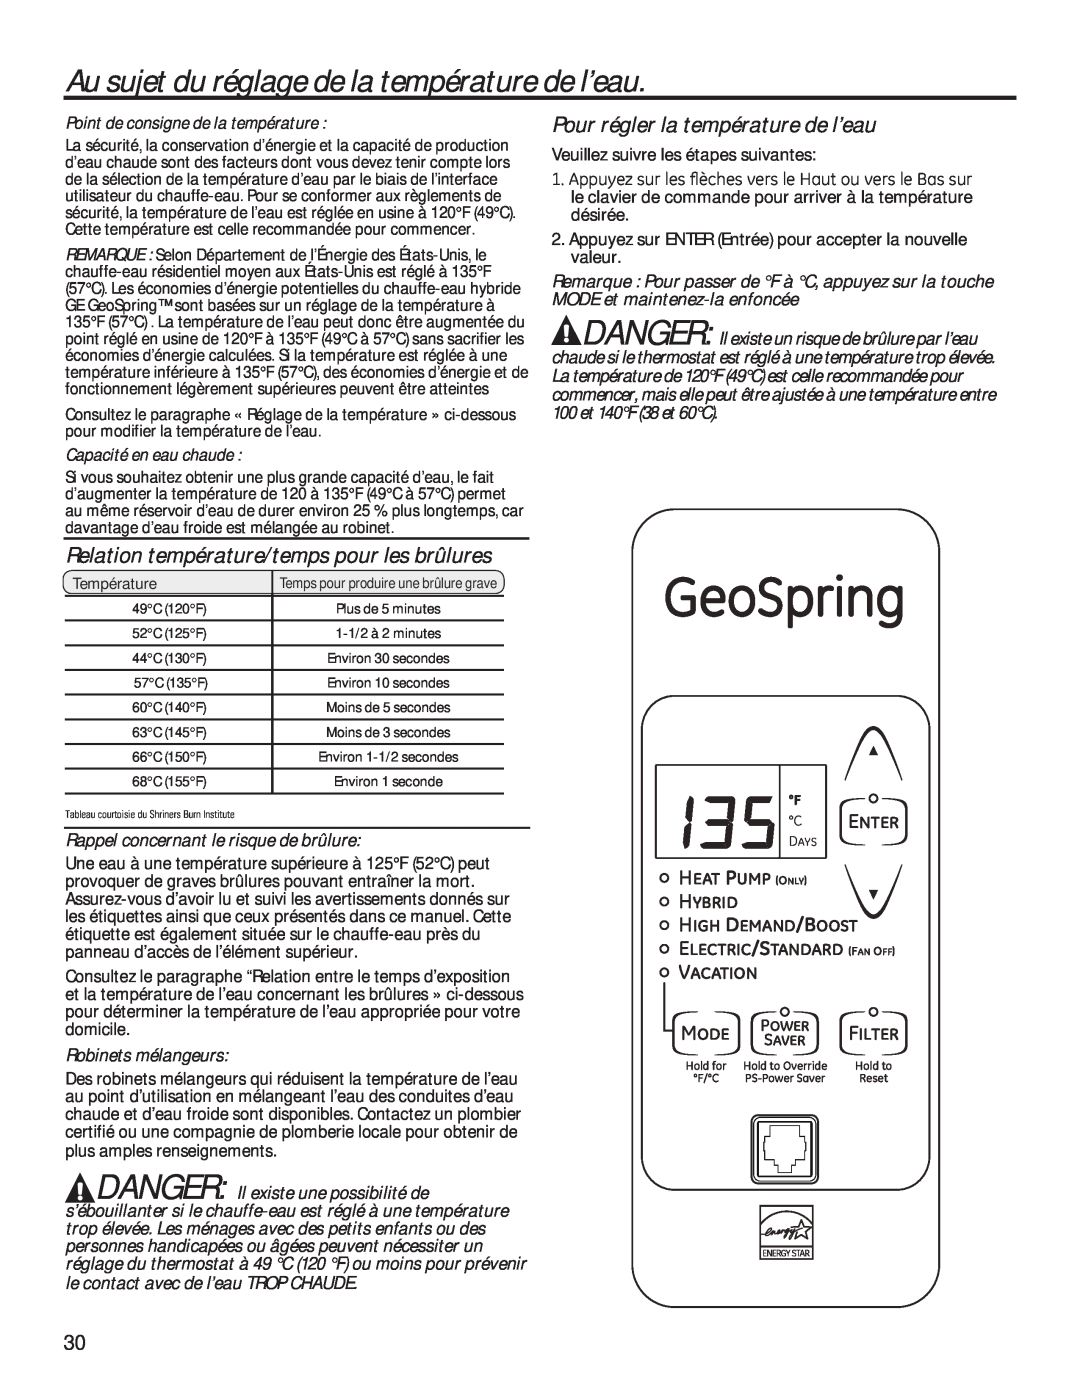 GE 49-50292 Au sujet du réglage de la température de l’eau, Relation température/temps pour les brûlures, GeoSpring, Mode 